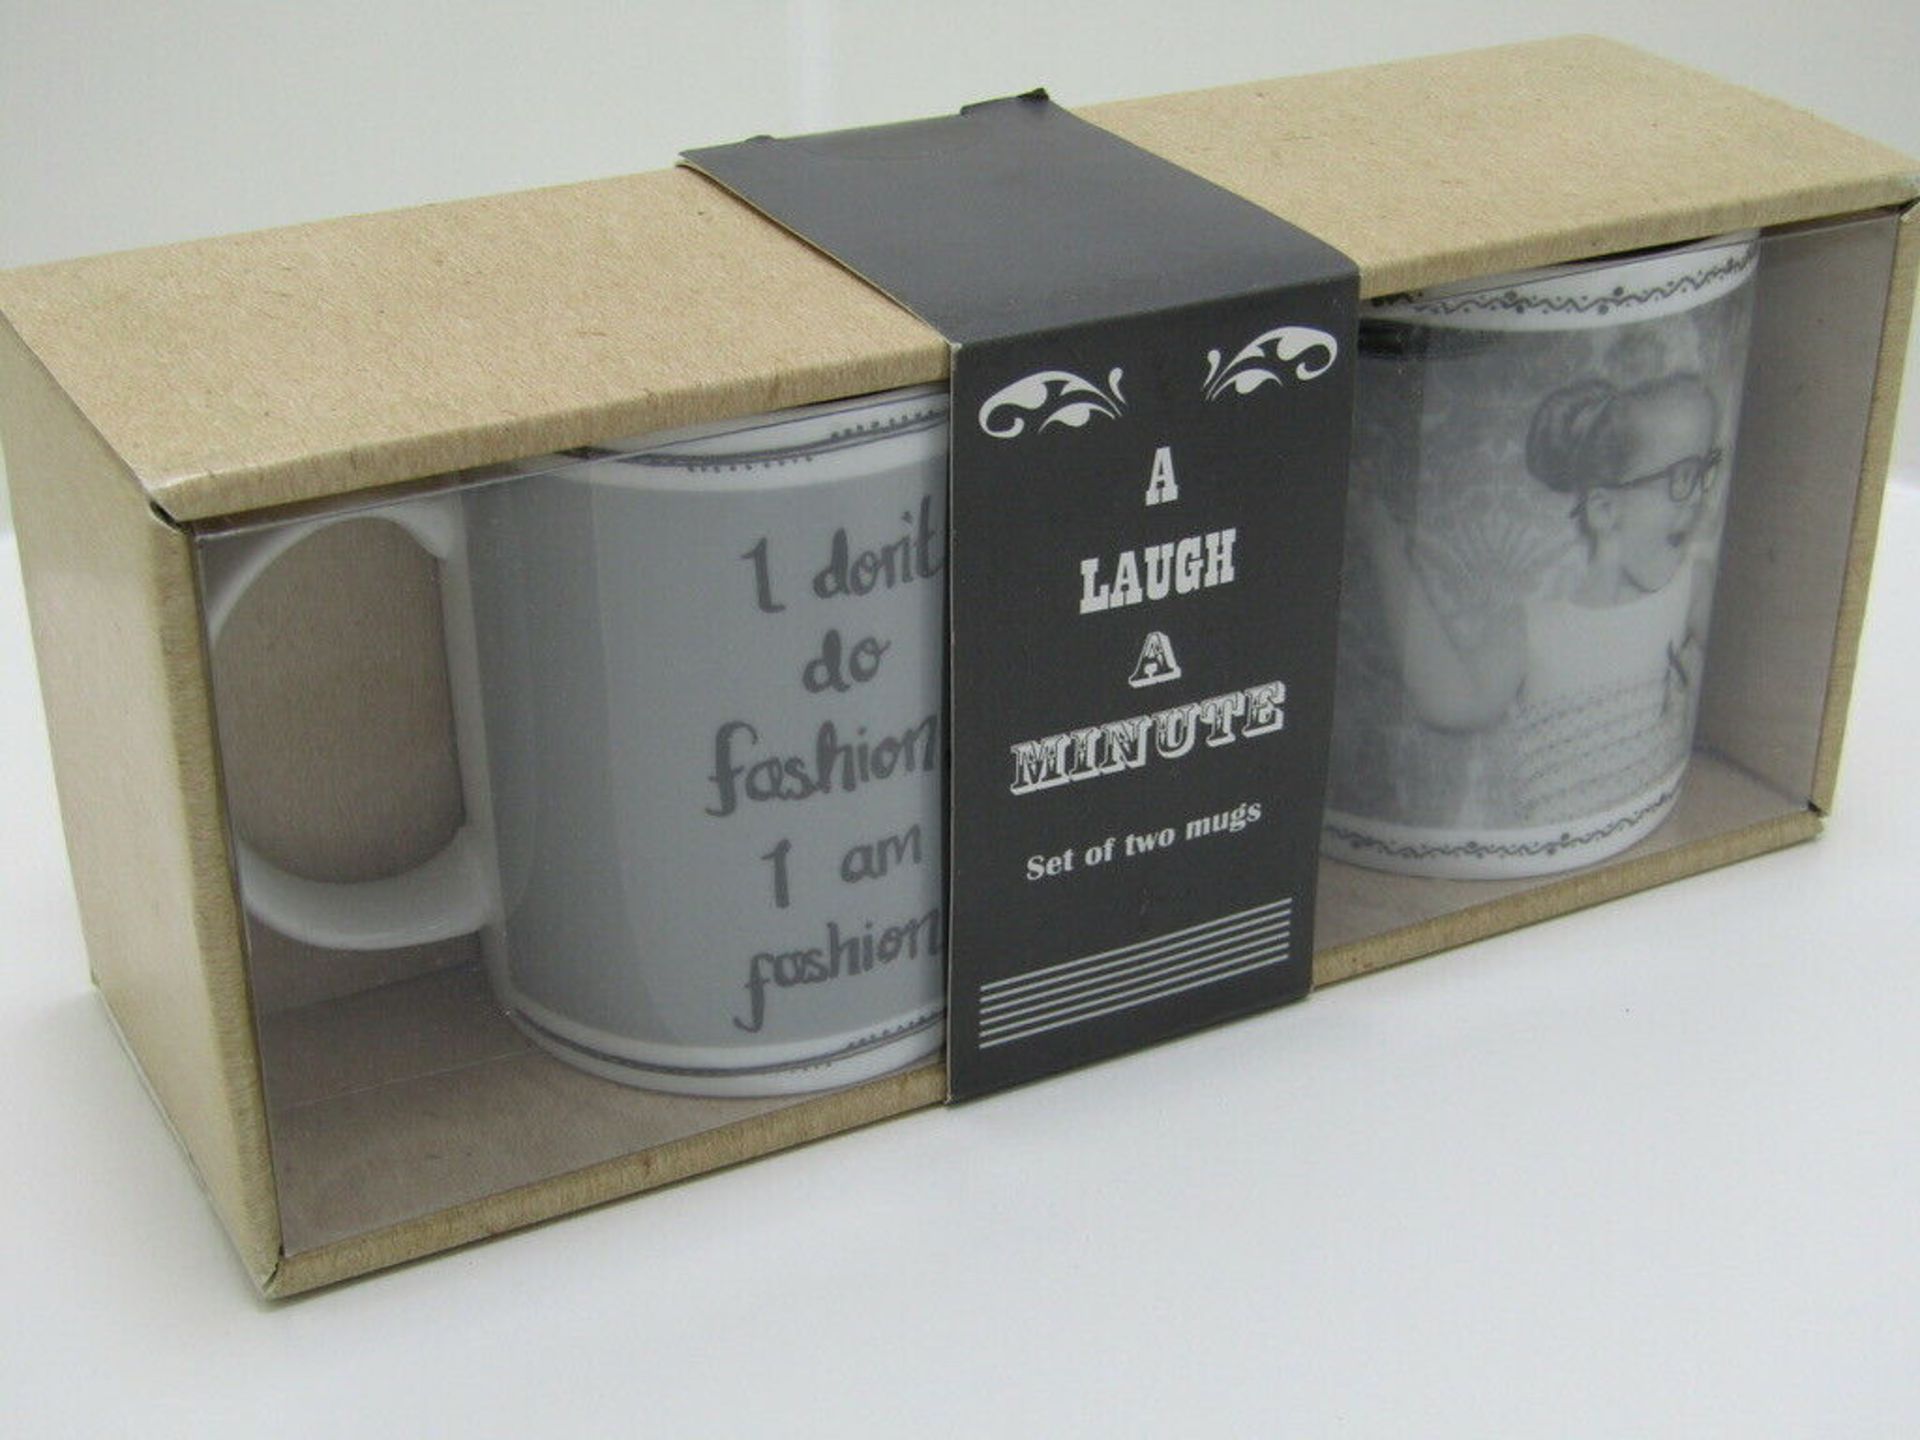 Set of 2 Novelty Mugs. Gift Boxed. Coffe Mugs. Large 11oz Volume. - Image 4 of 6